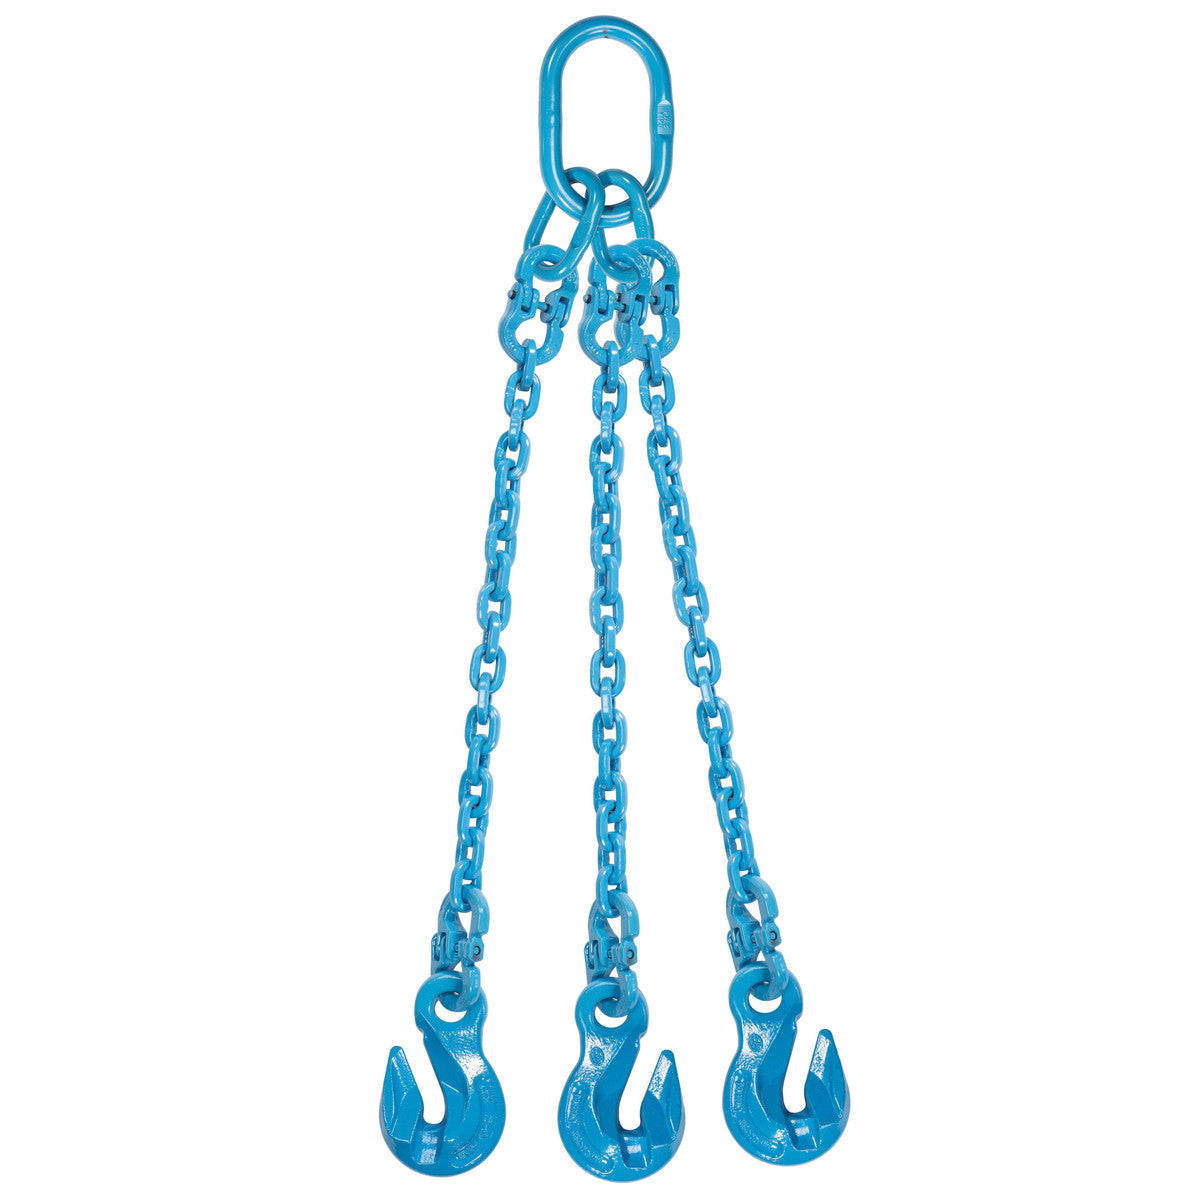 9/32" x 16' - Pewag 3 Leg Chain Sling w/ Grab Hooks - Grade 120